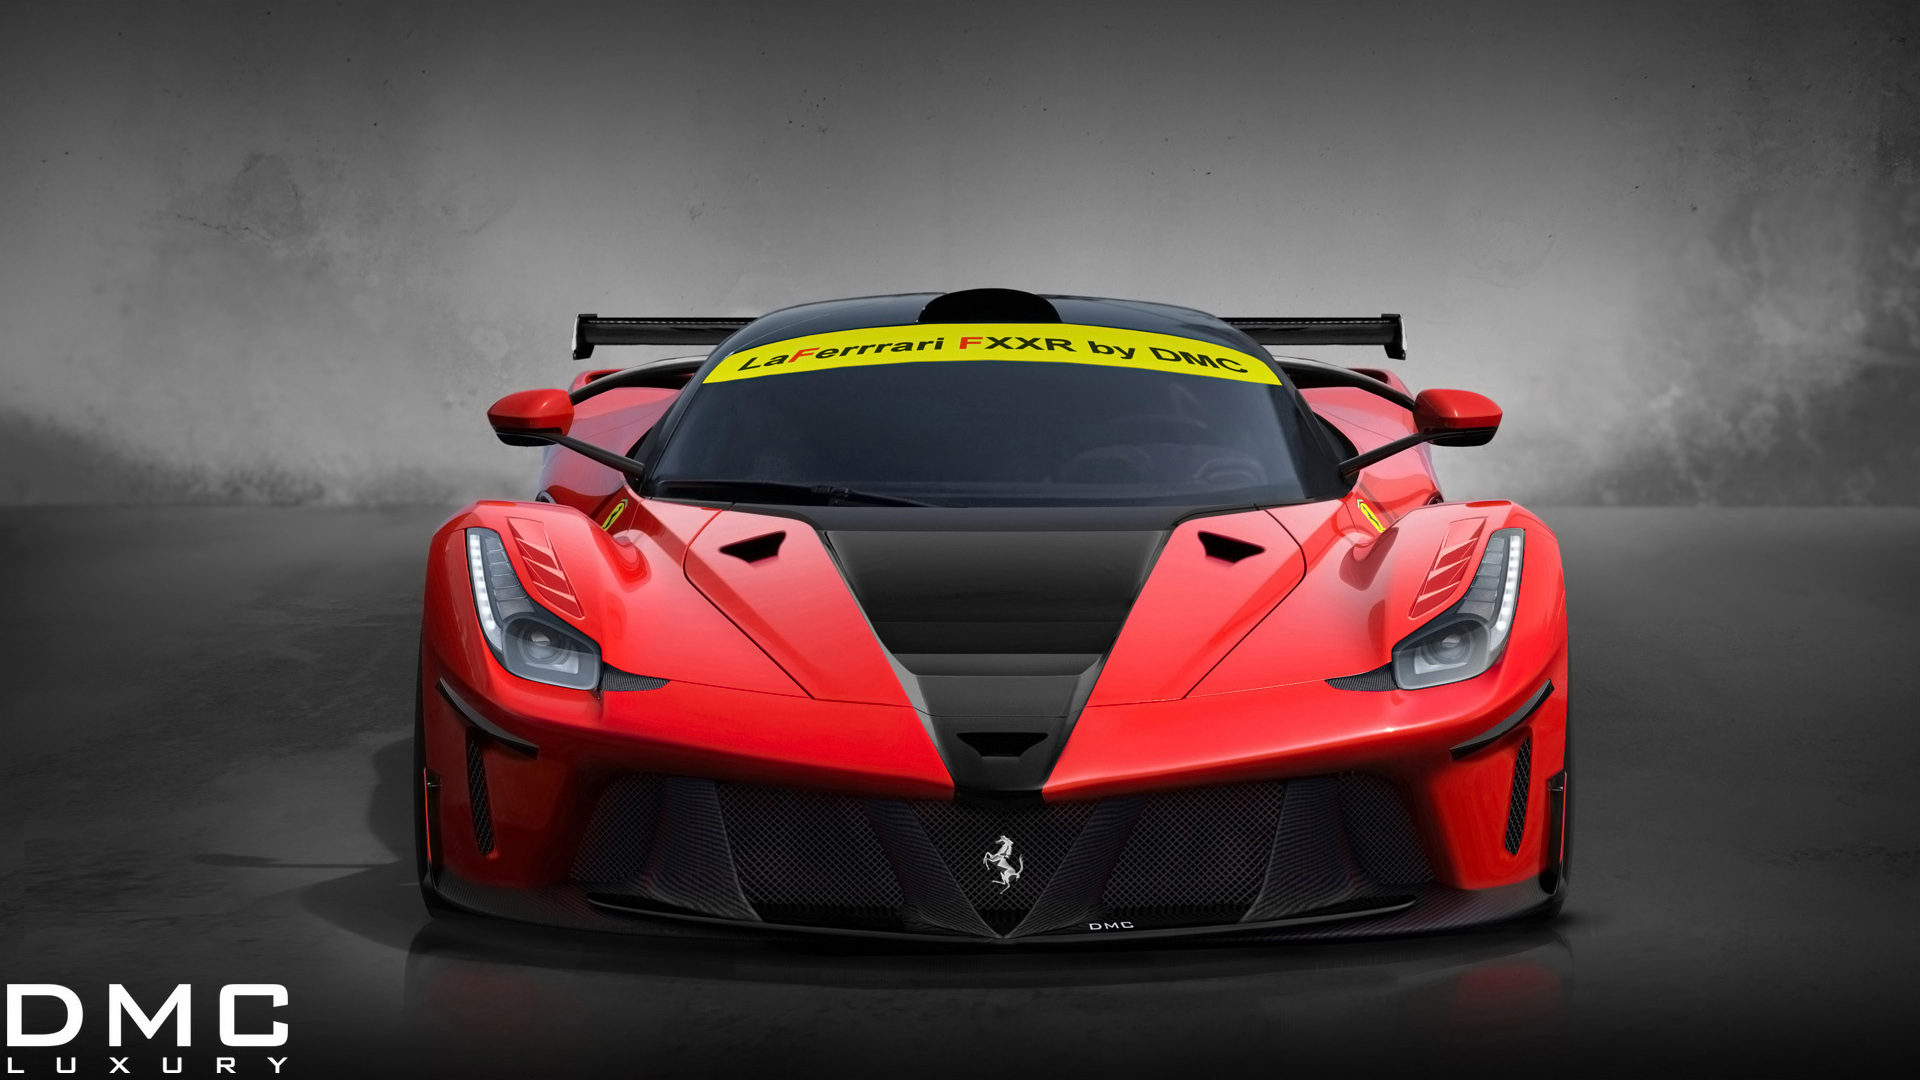 Dmc Ferrari Laferrari Fxxr Wallpaper HD Car